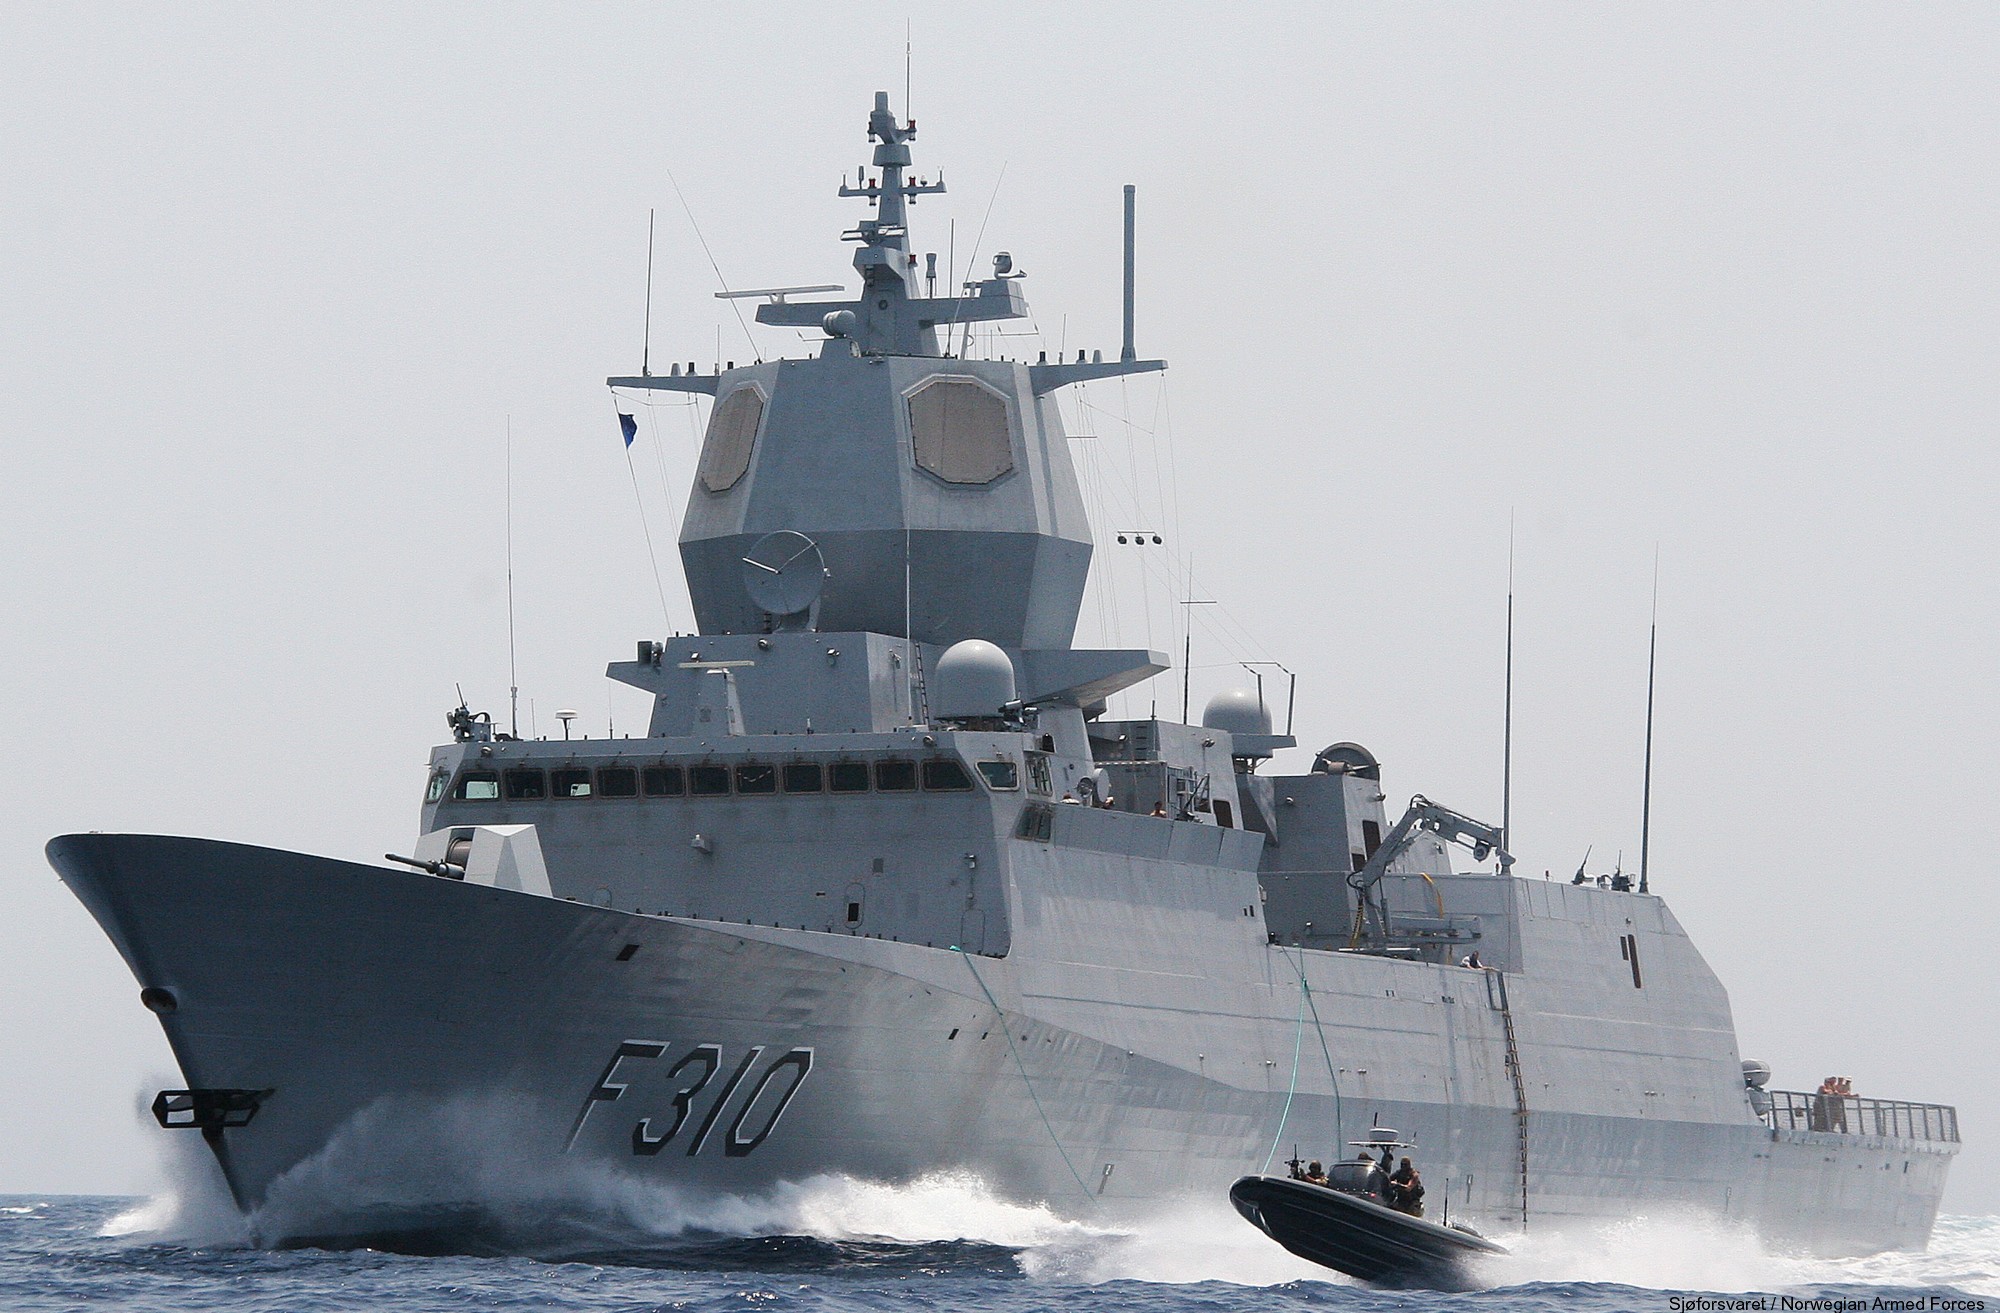 f-310 fridtjof nansen hnoms knm frigate royal norwegian navy sjoforsvaret 59